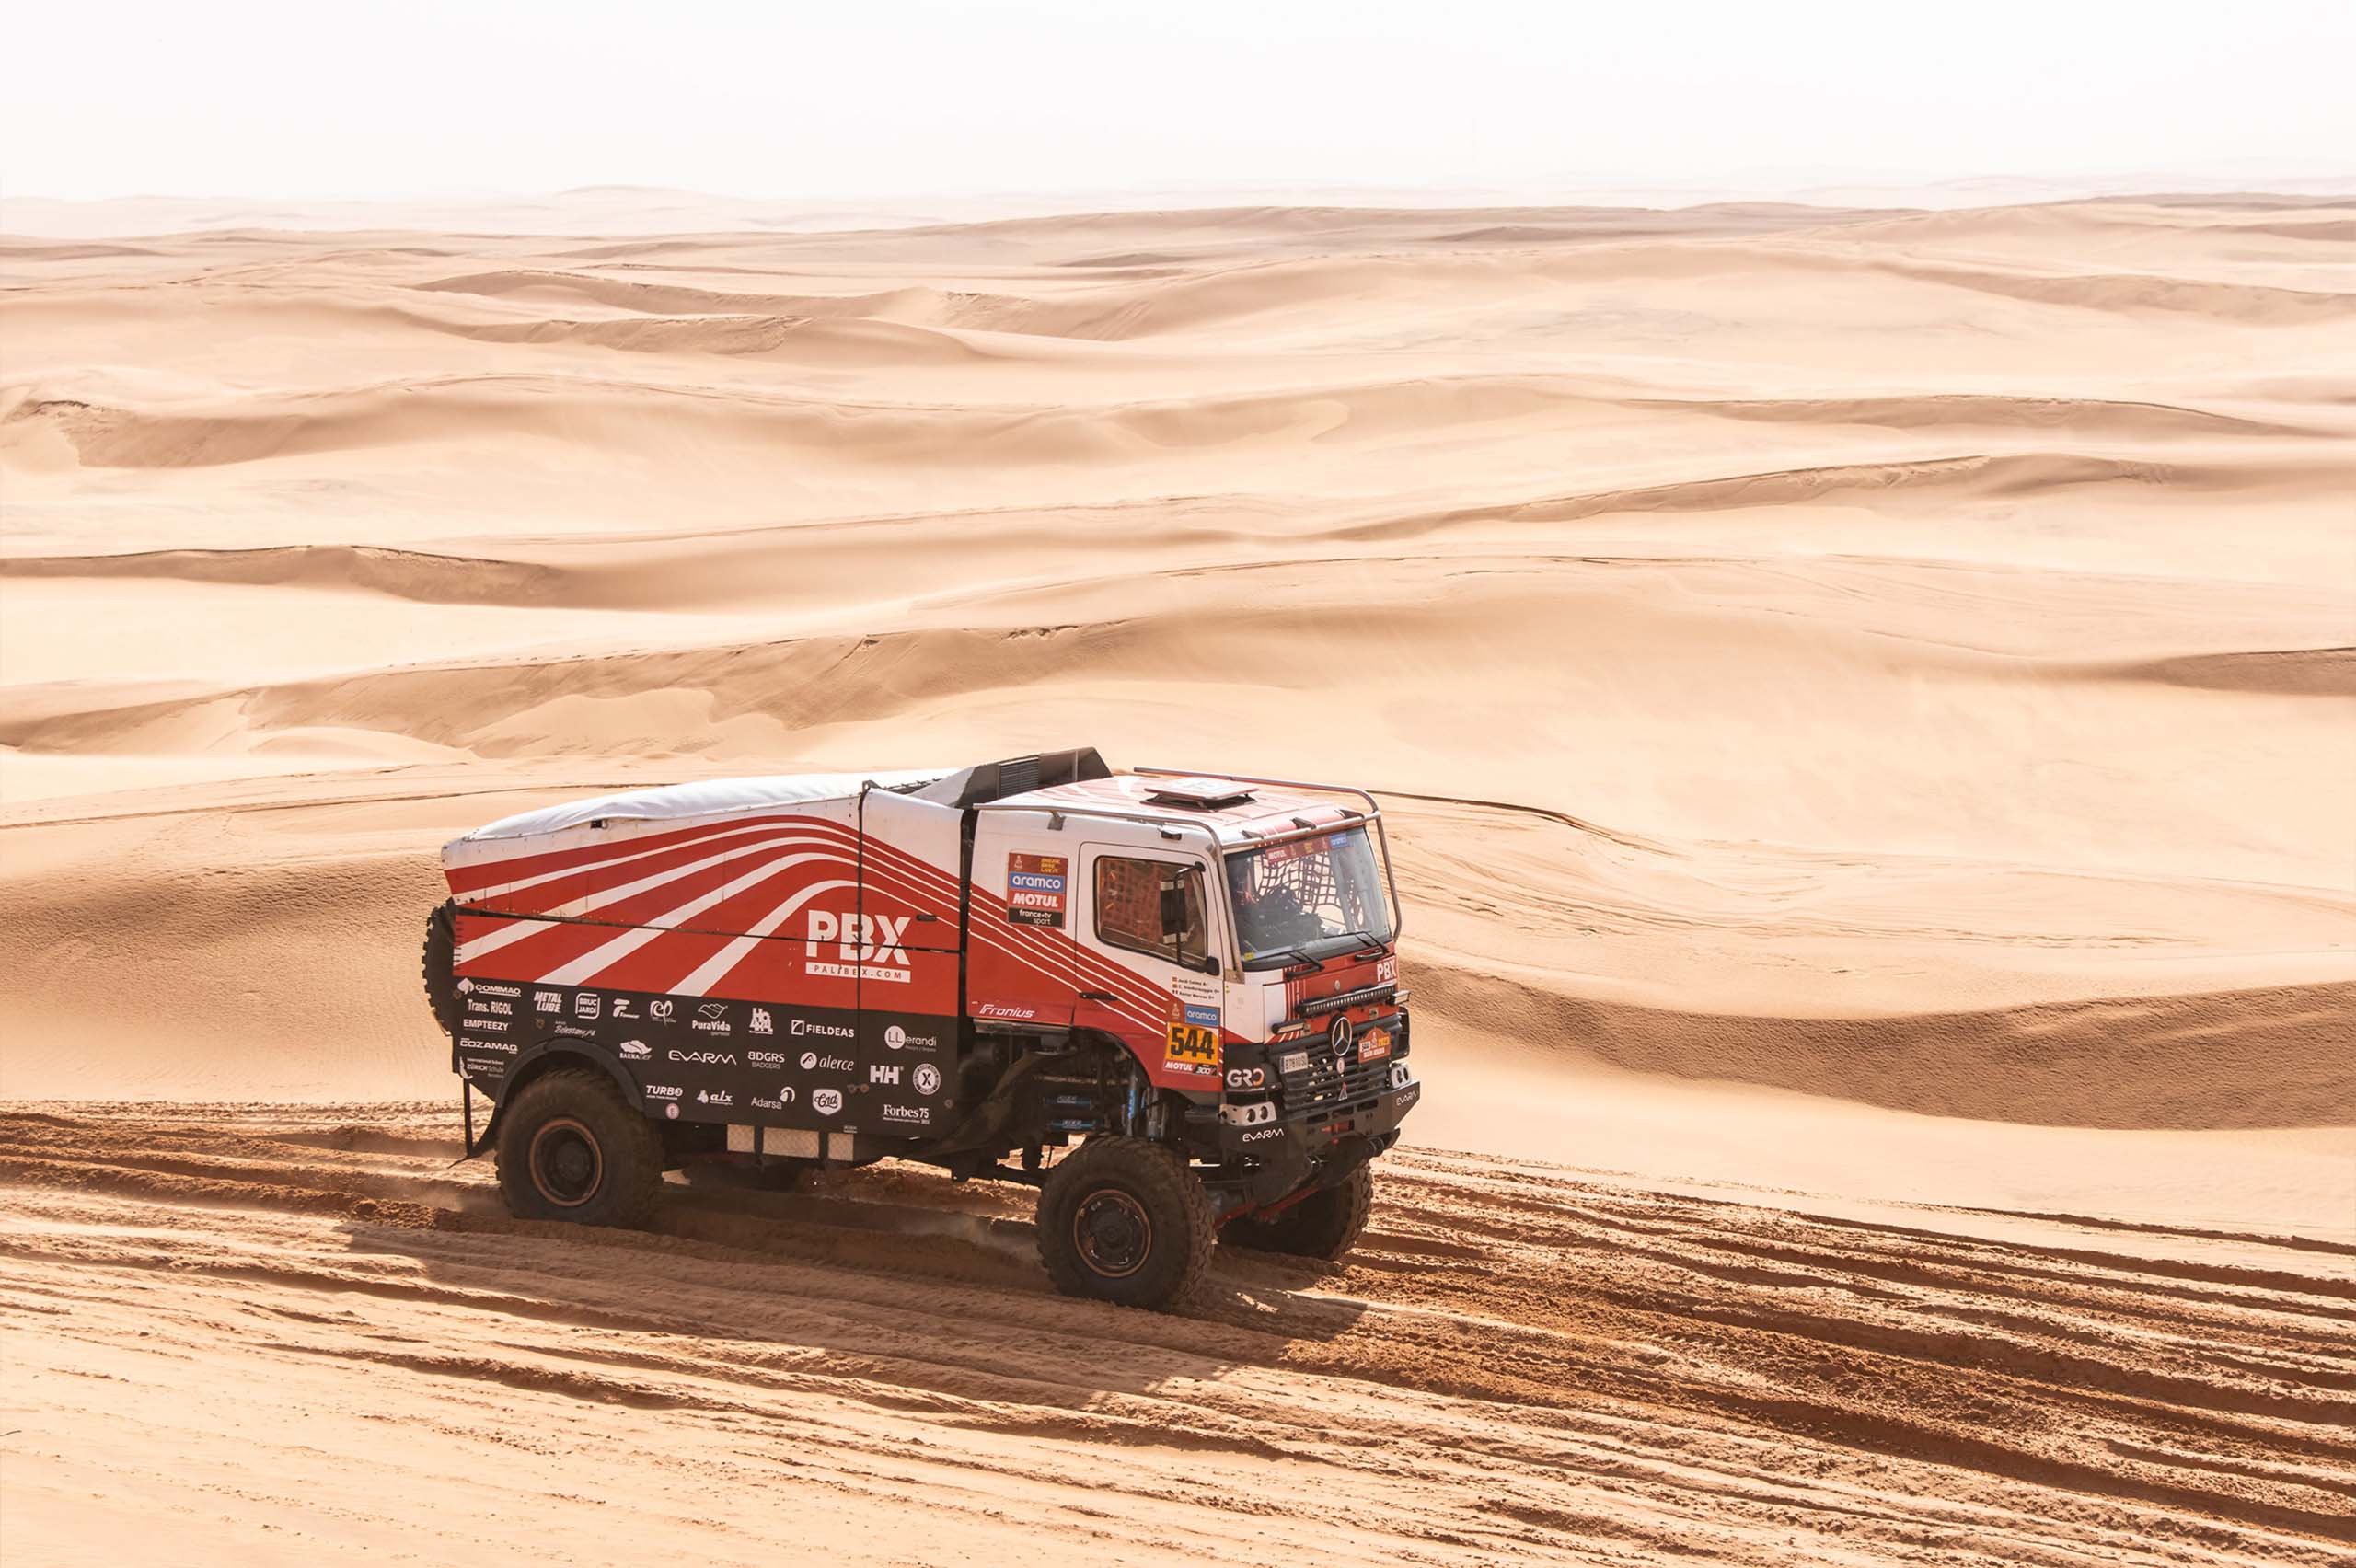 camion español dakar - camion dakar - camion dunas desierto - pbx dakar team - palibex